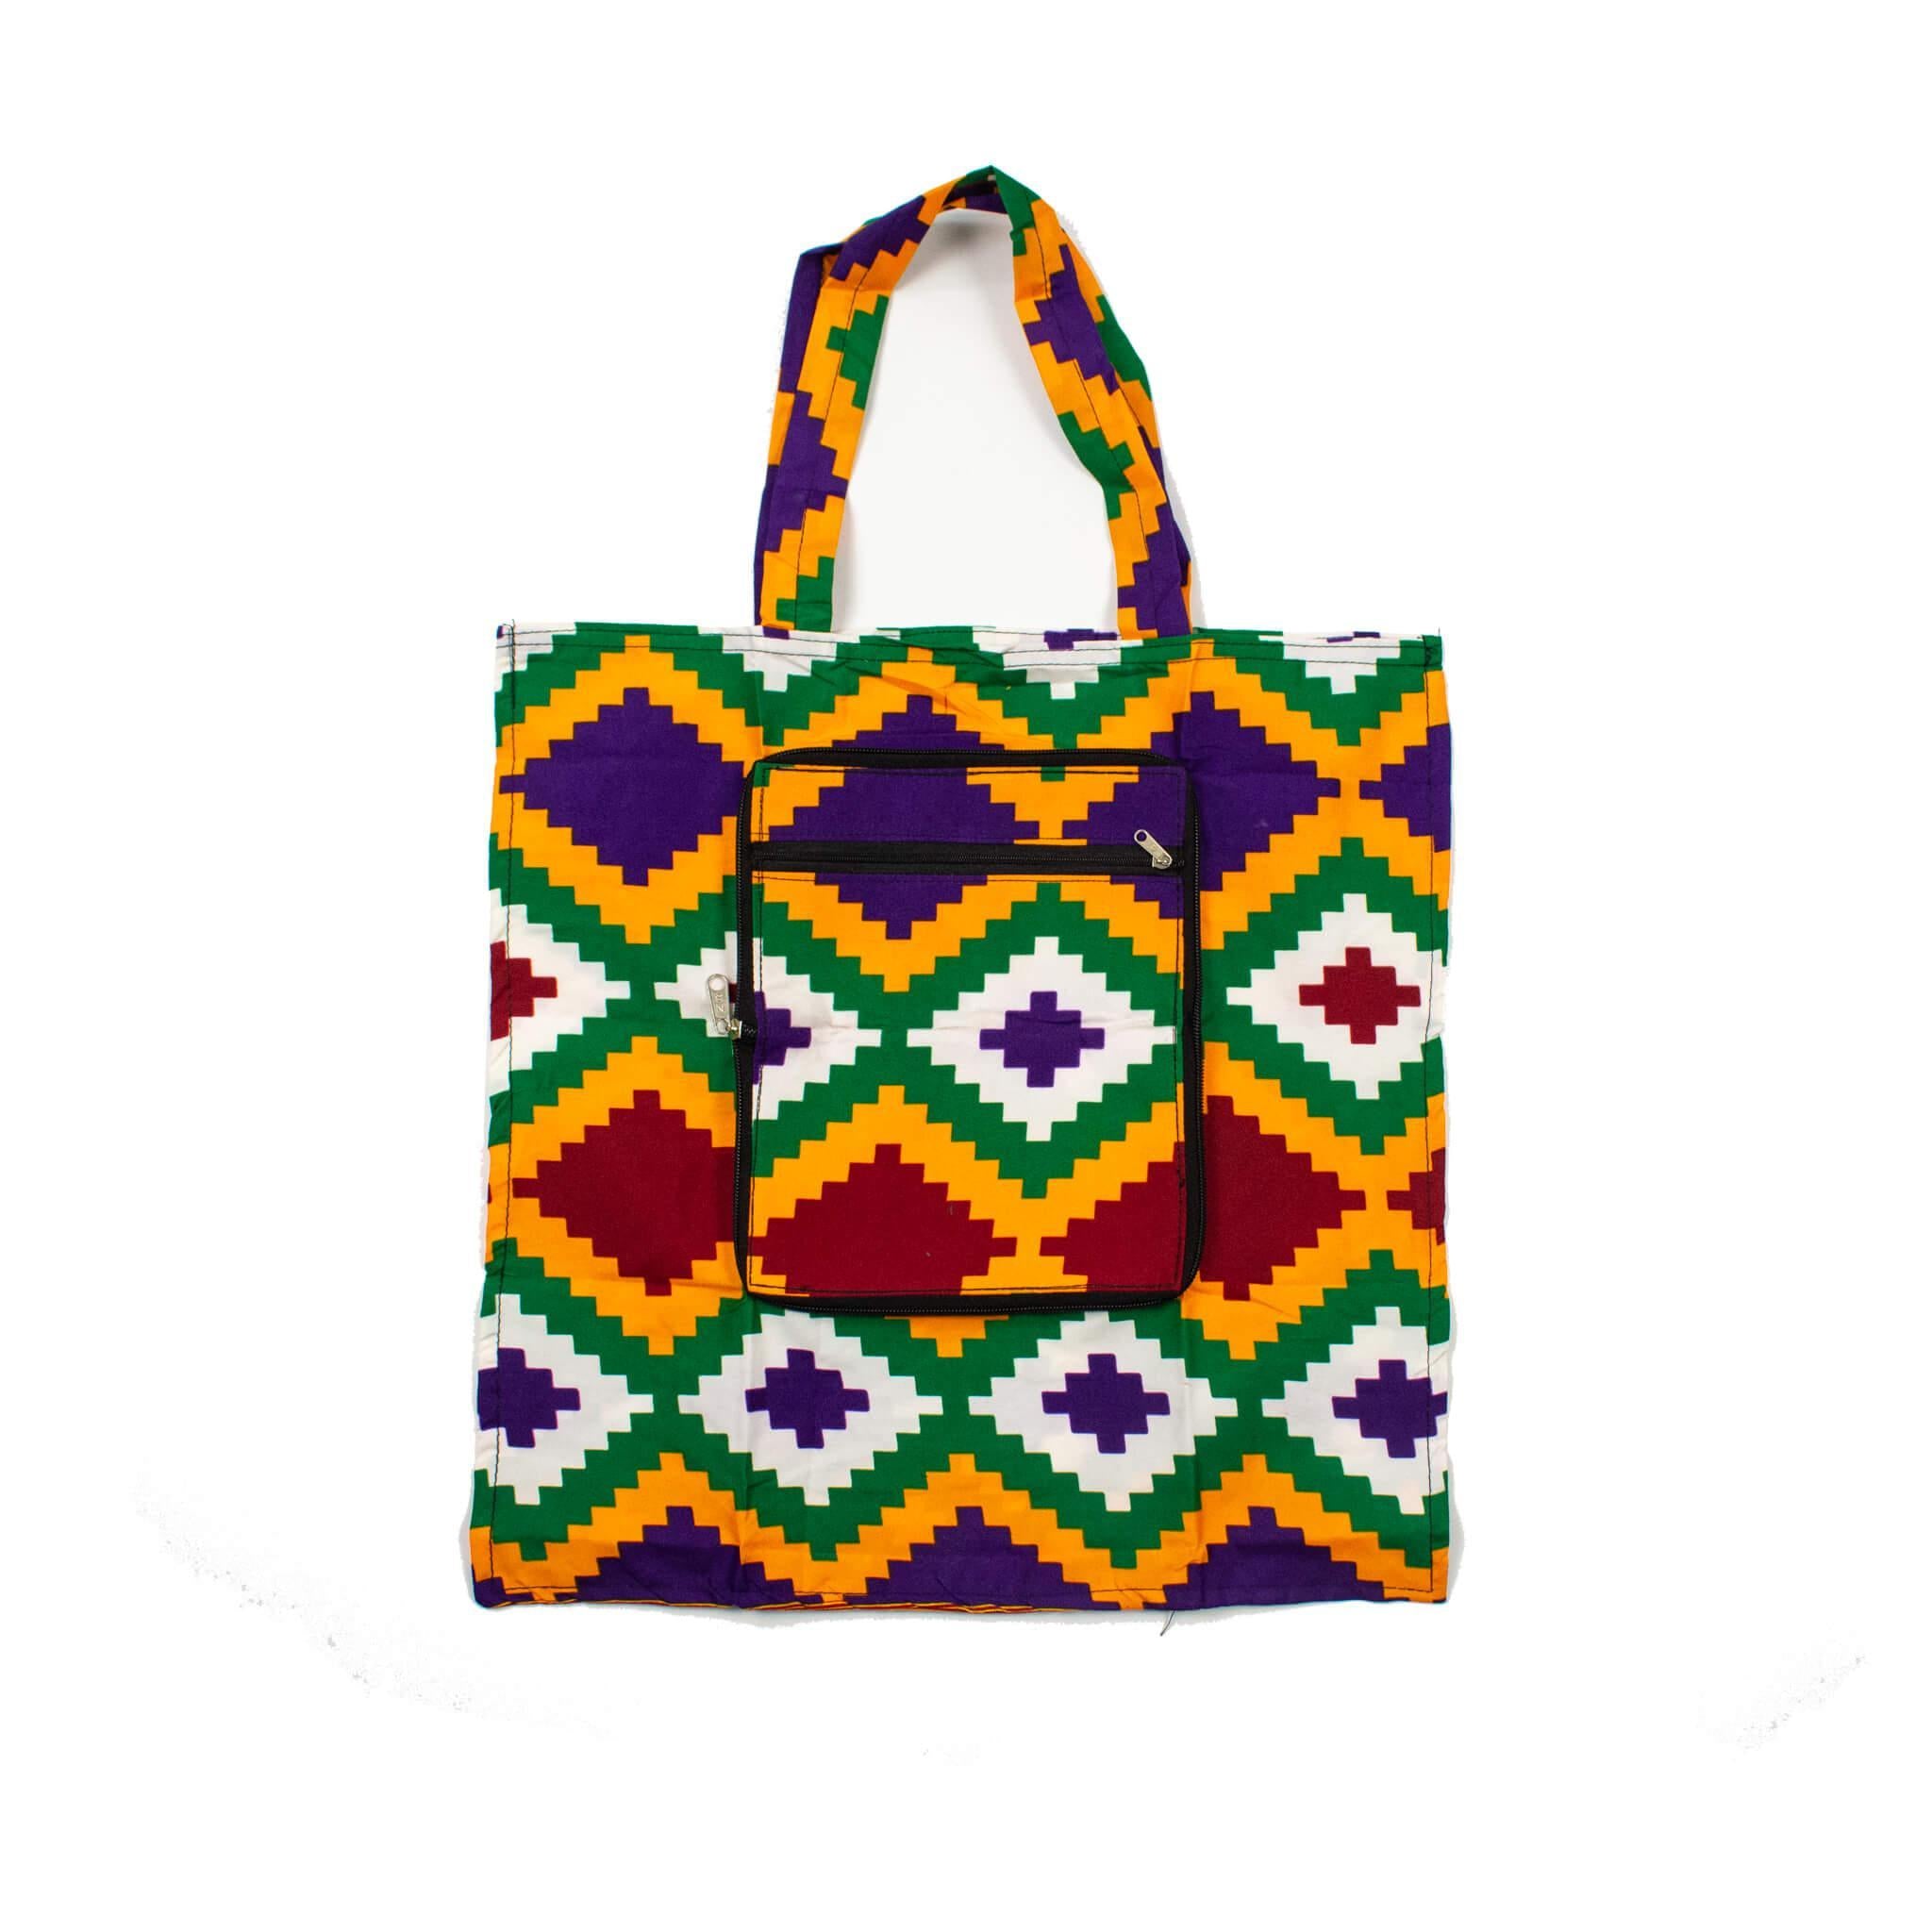 Multicolored Kente Foldable Wallet Shopping Bag